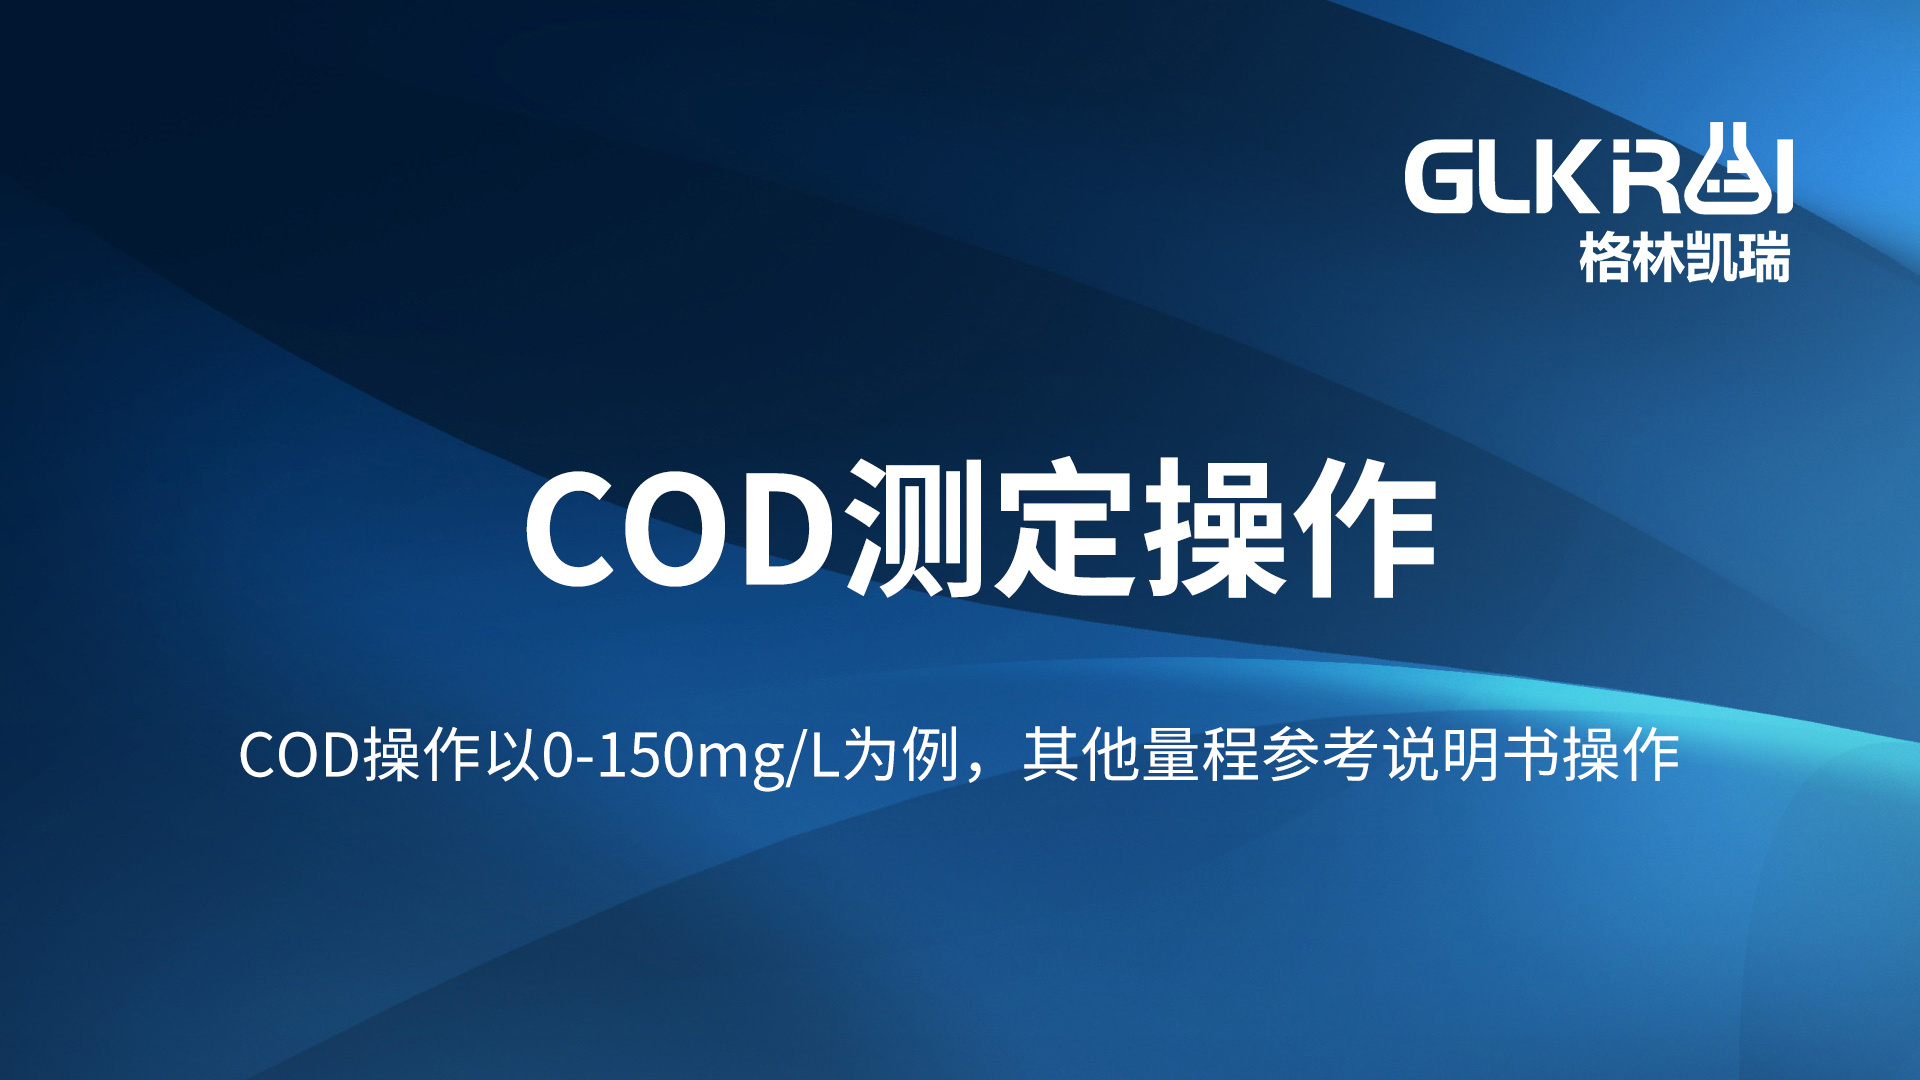 格林凯瑞实验室COD快速检测仪GL-800UV